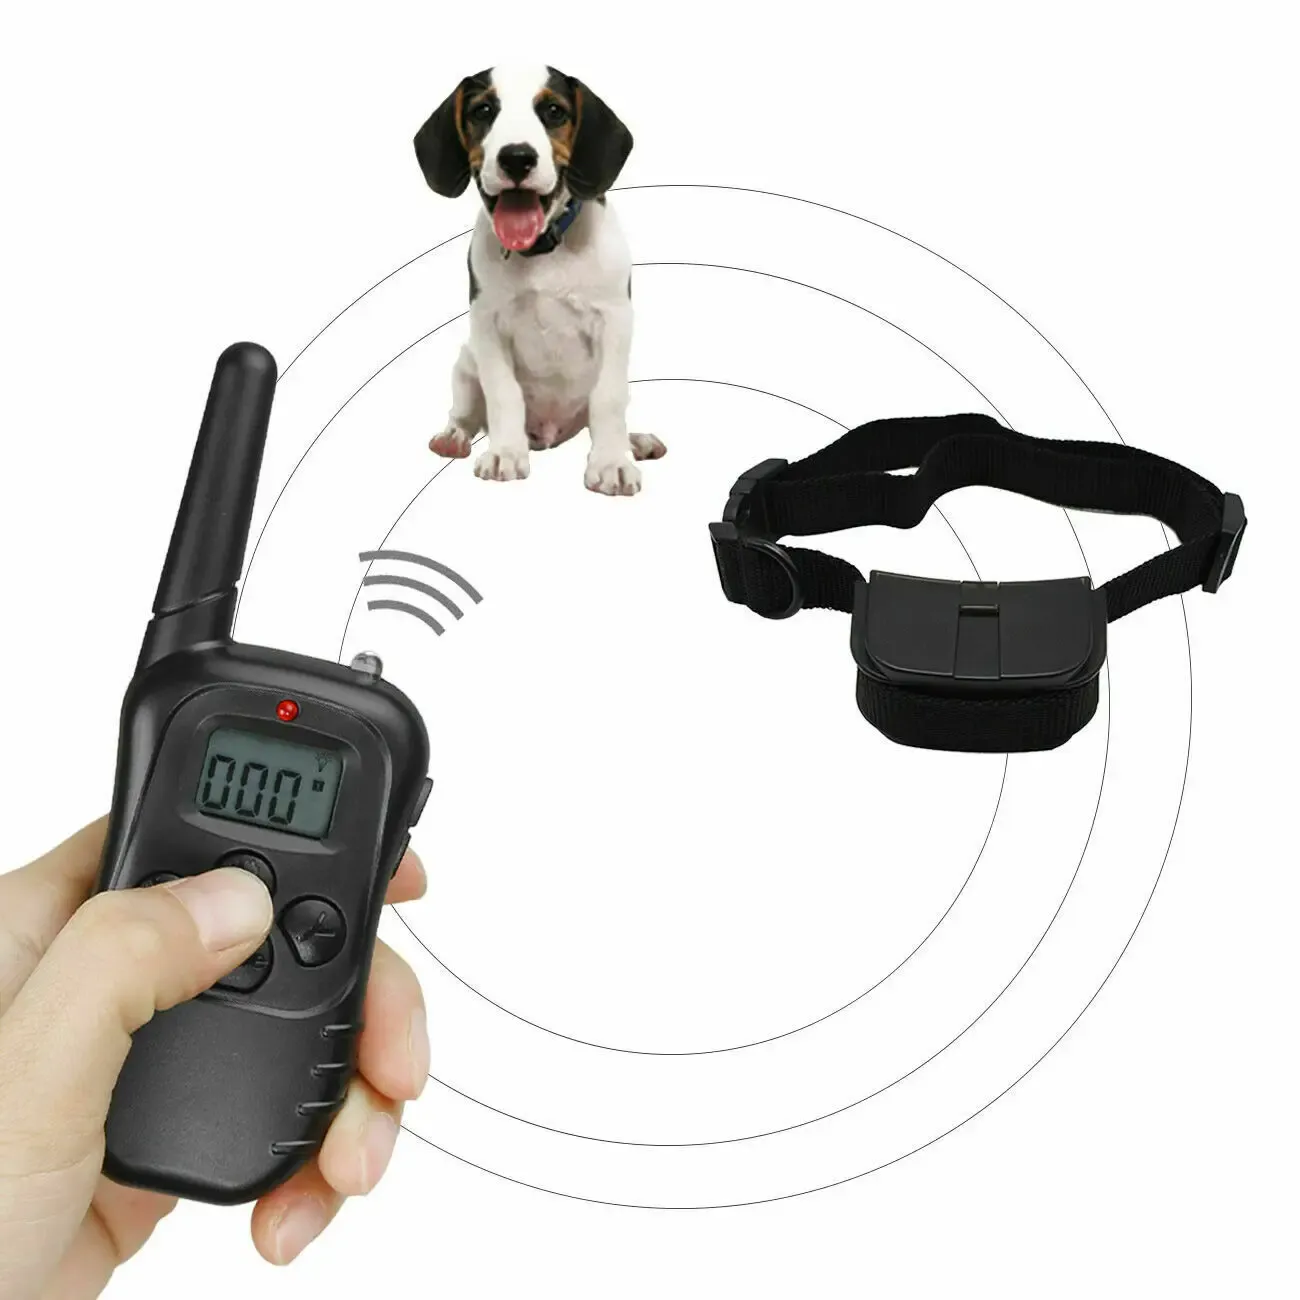 Kragen 998D Nieuwe slimme schokkraag voor honden waterdichte oplaadbare honden elektrische trainingskraag met afstandsbediening voor kleine middelgrote grote d